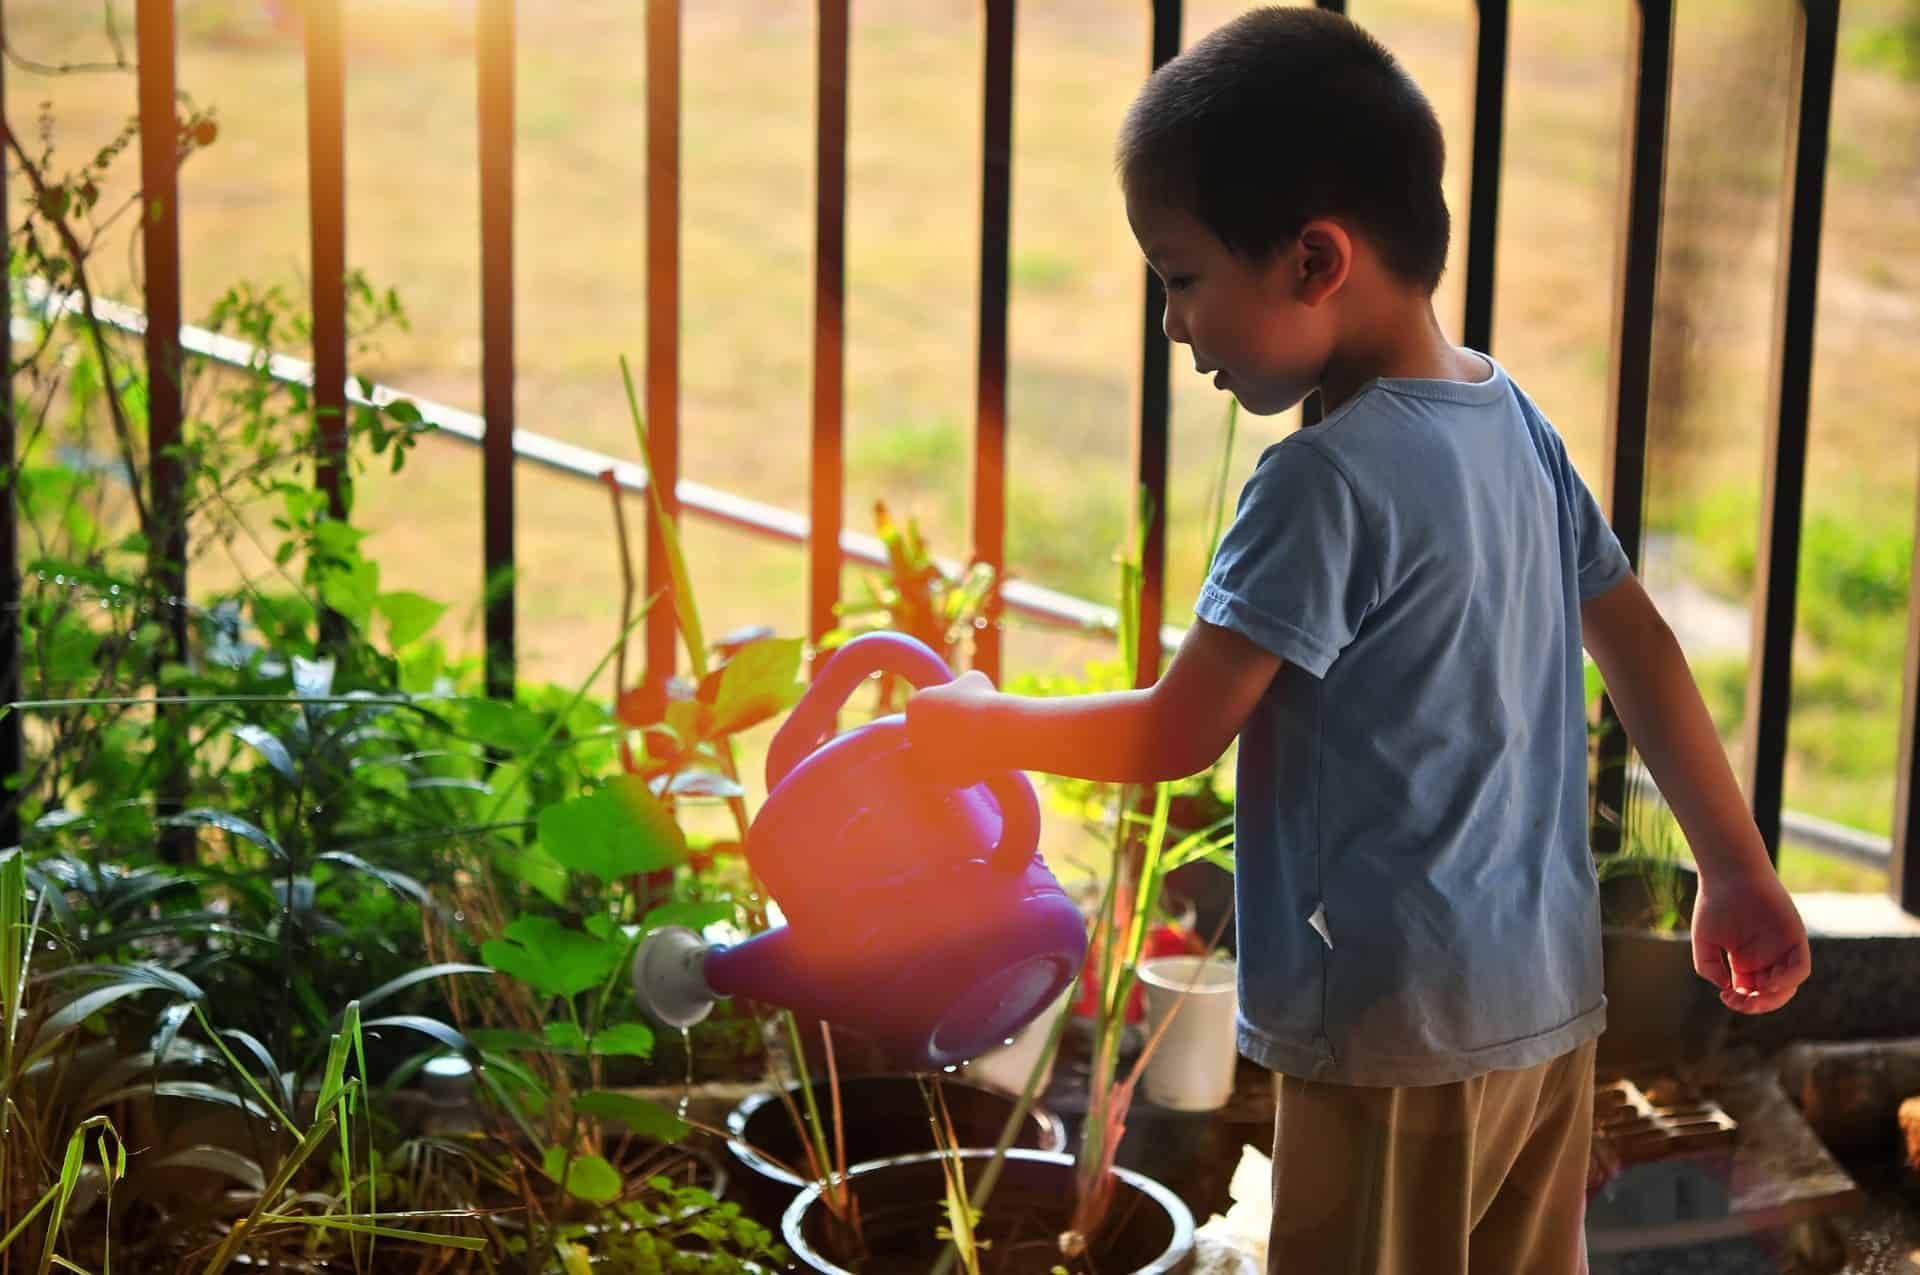 Criança regando plantas como atividade da educação ambiental nas escolas.